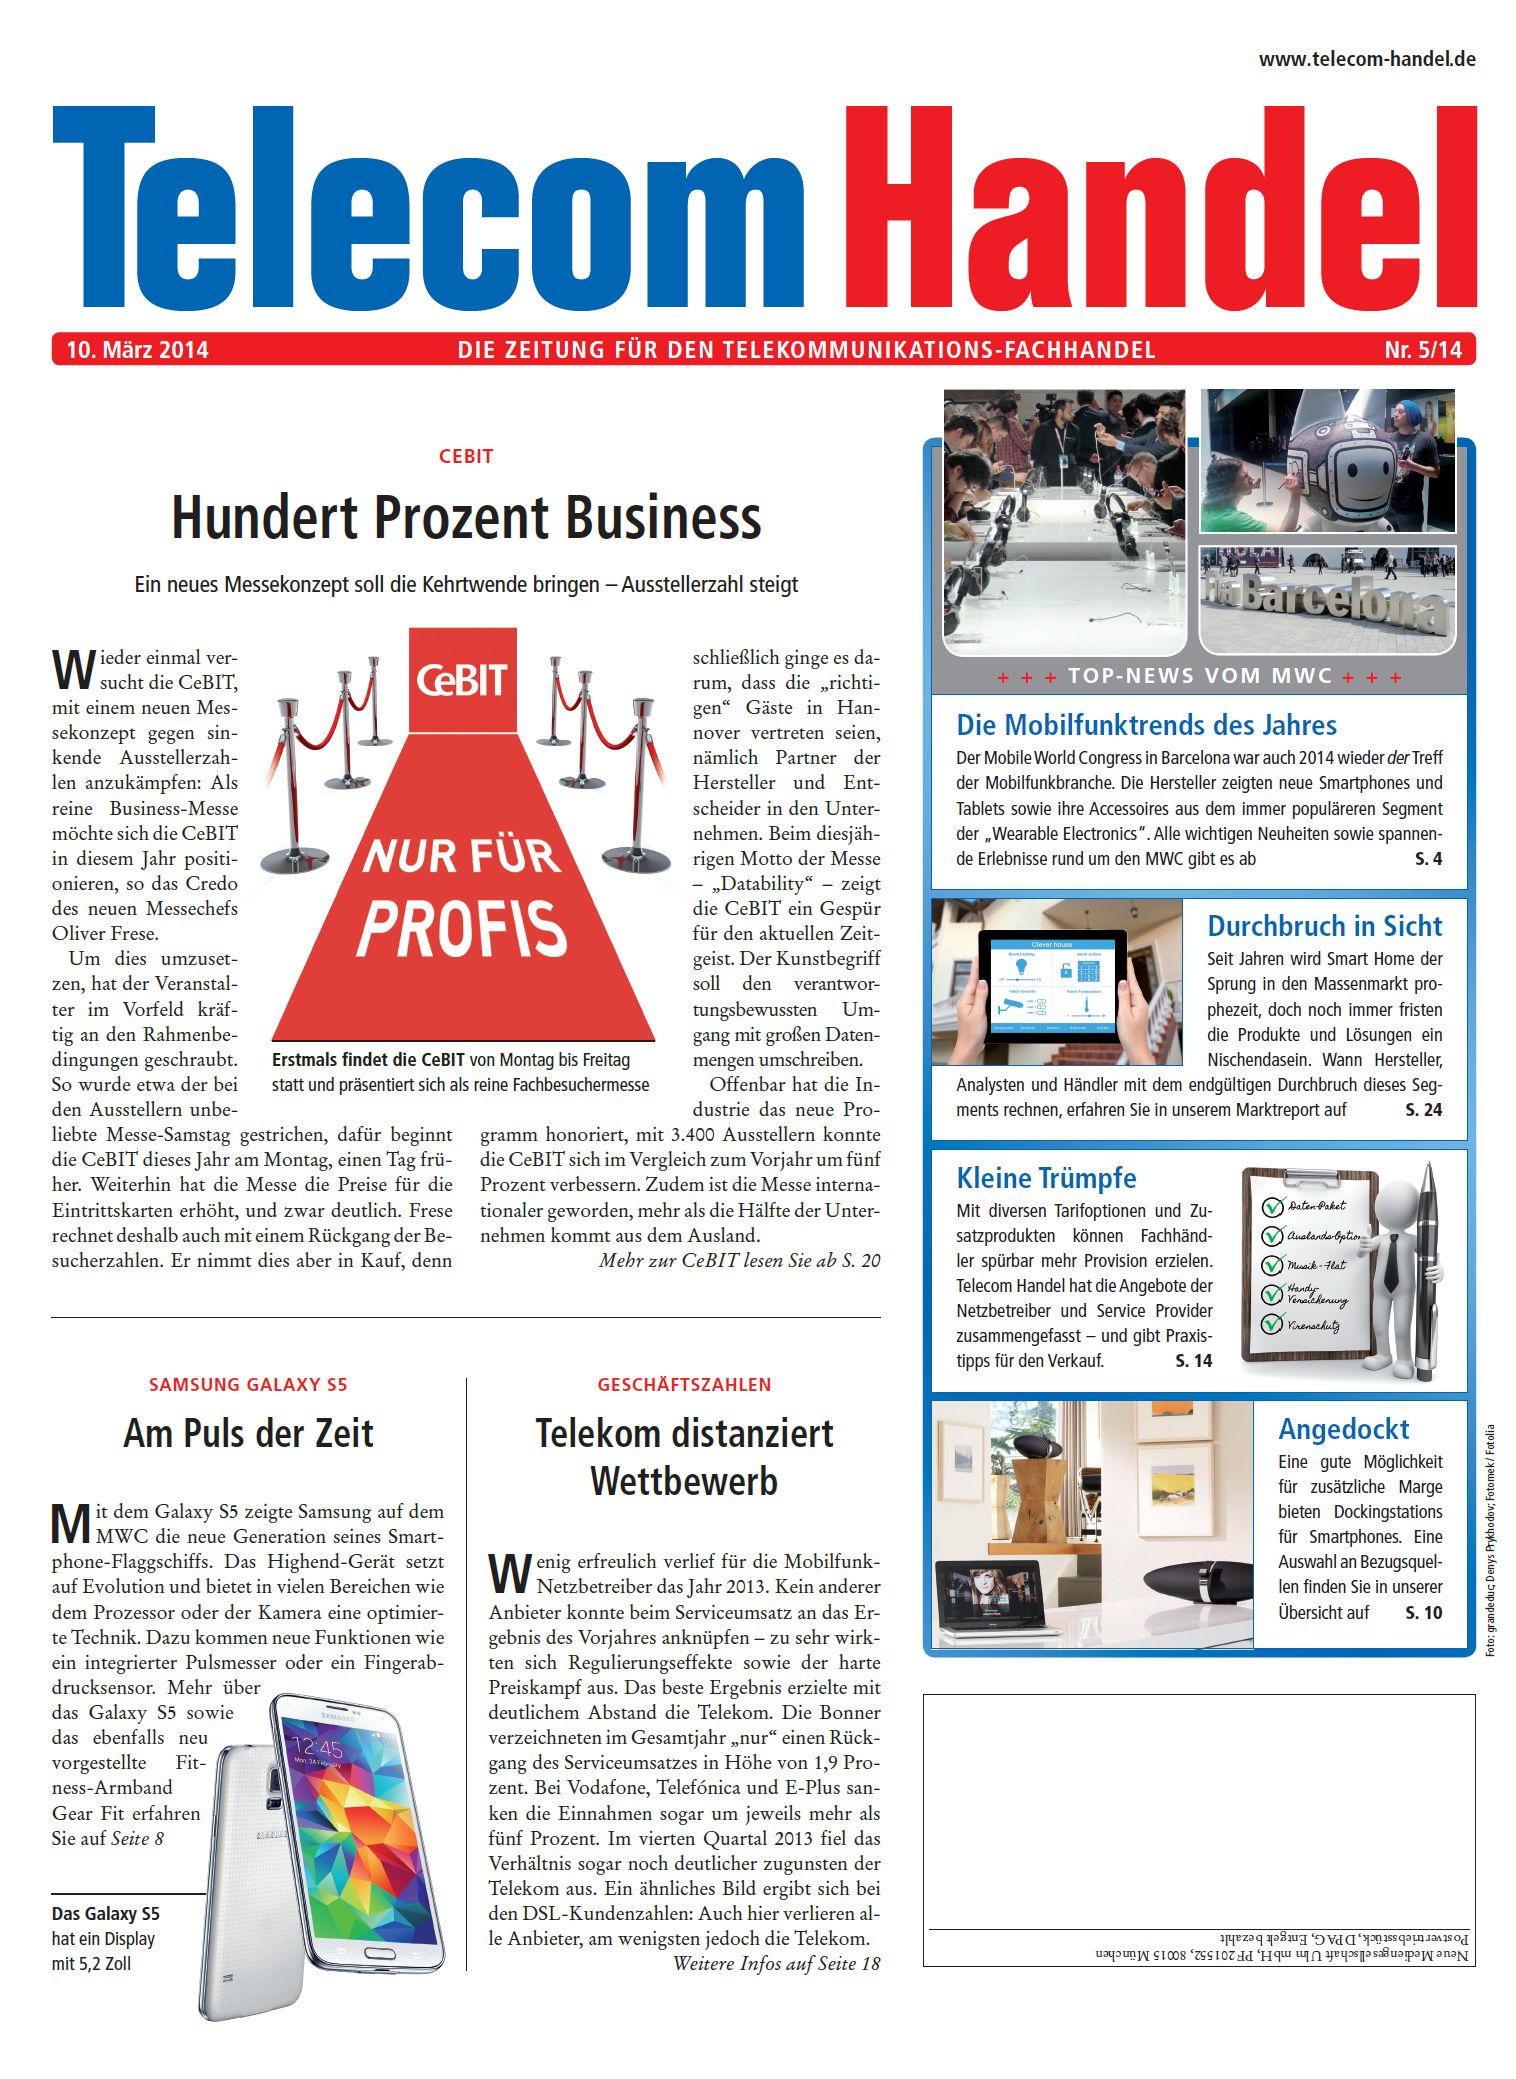 Telecom Handel Ausgabe 05/2014